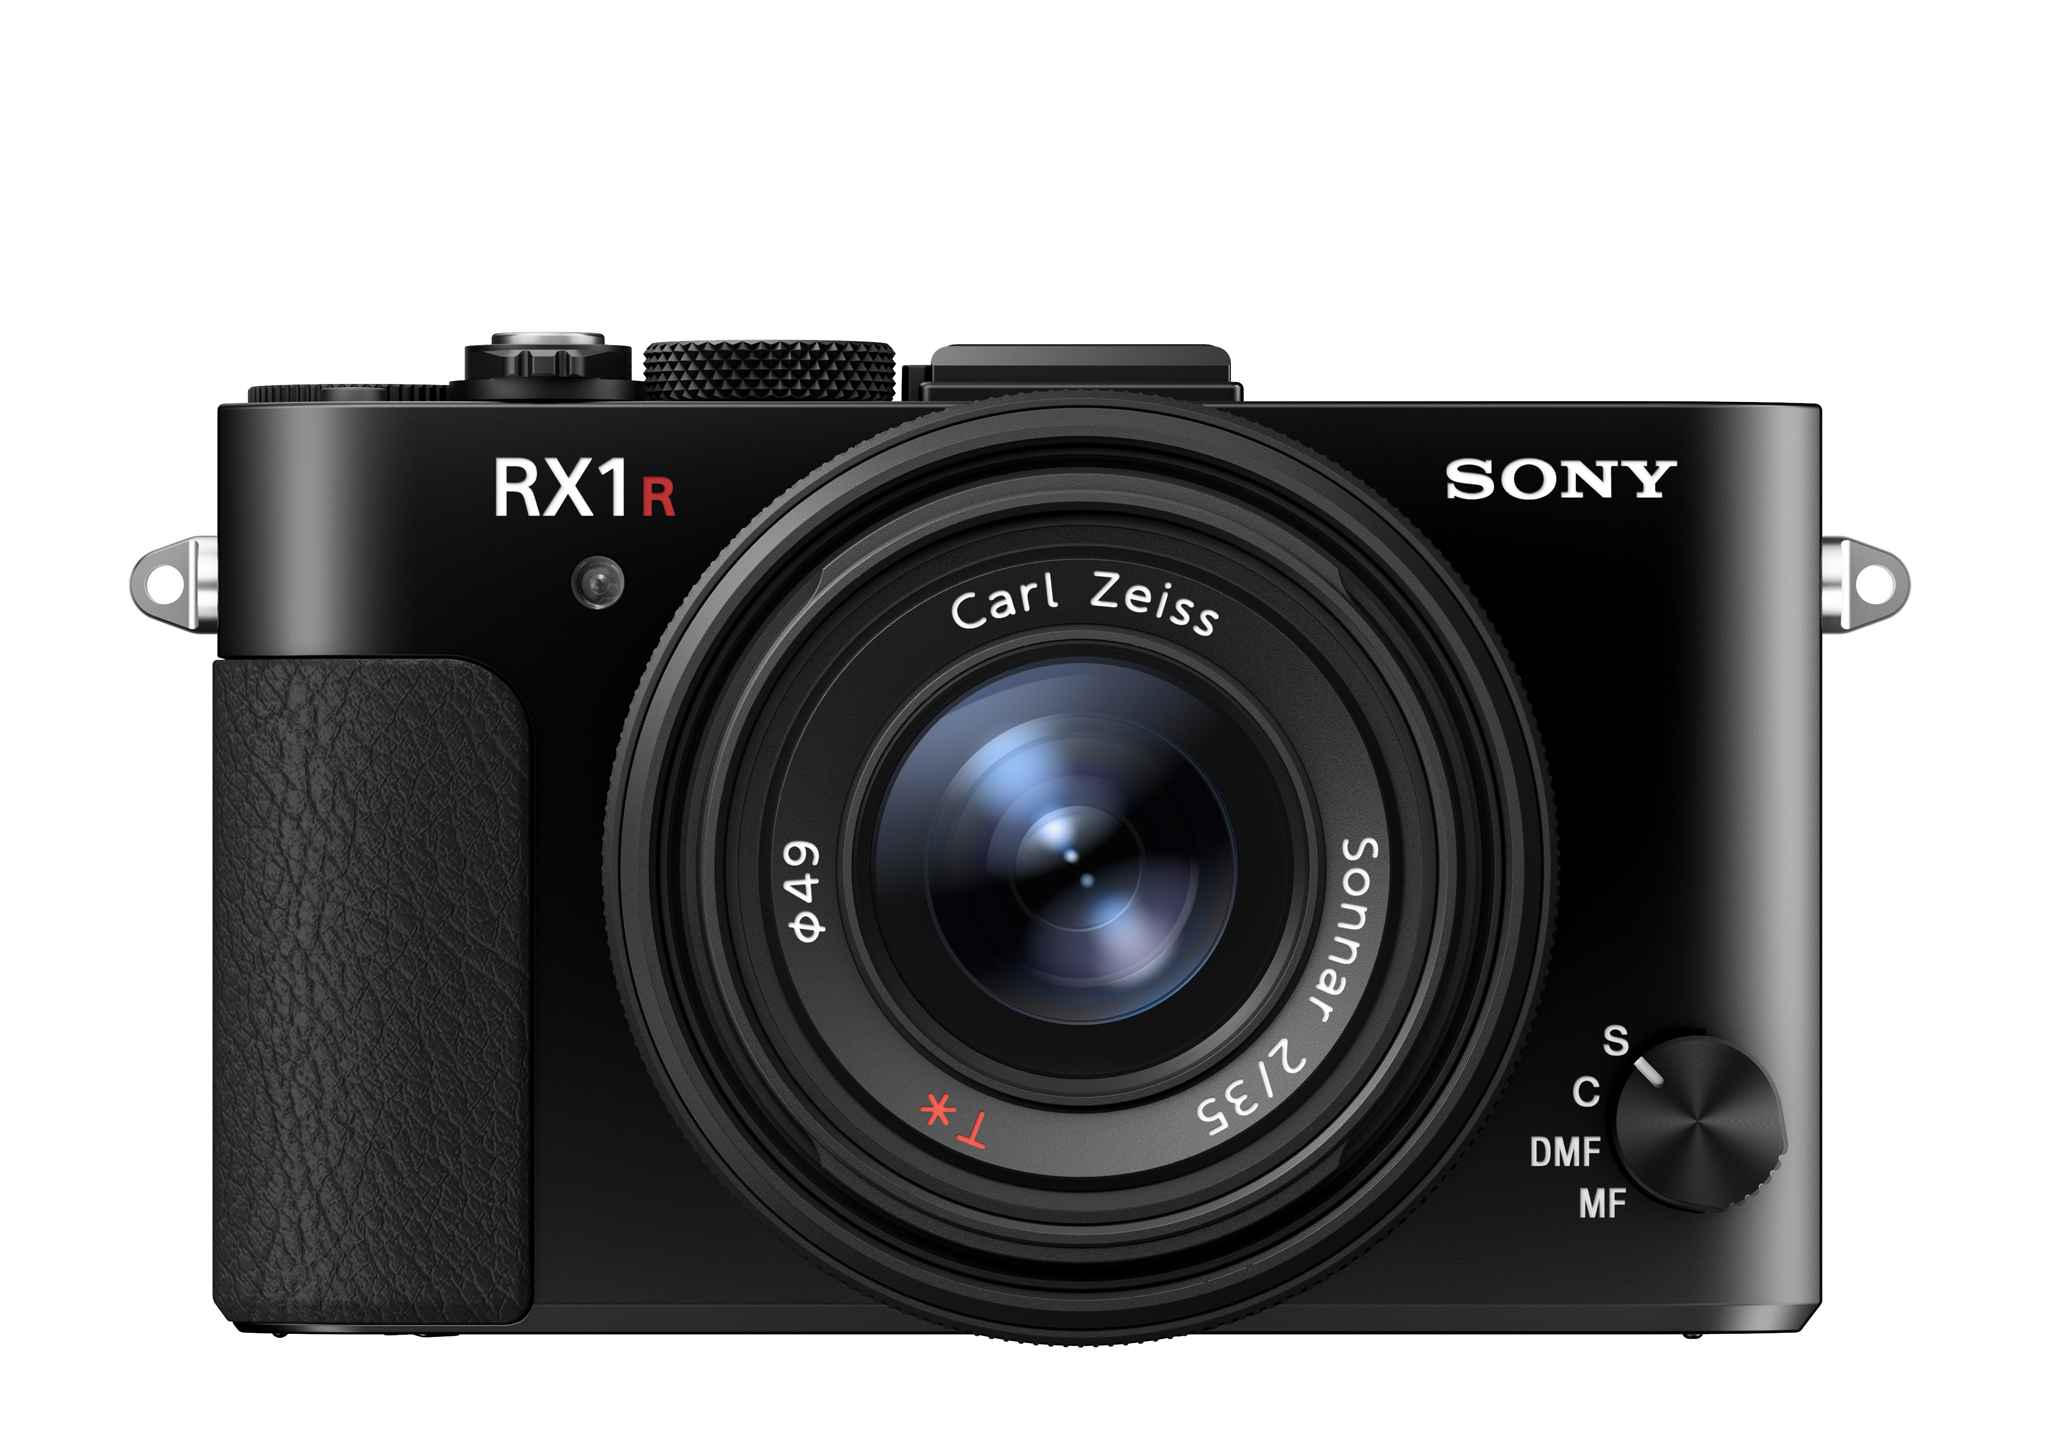 Sony-DSC-RX1RM2-fdt2.jpg